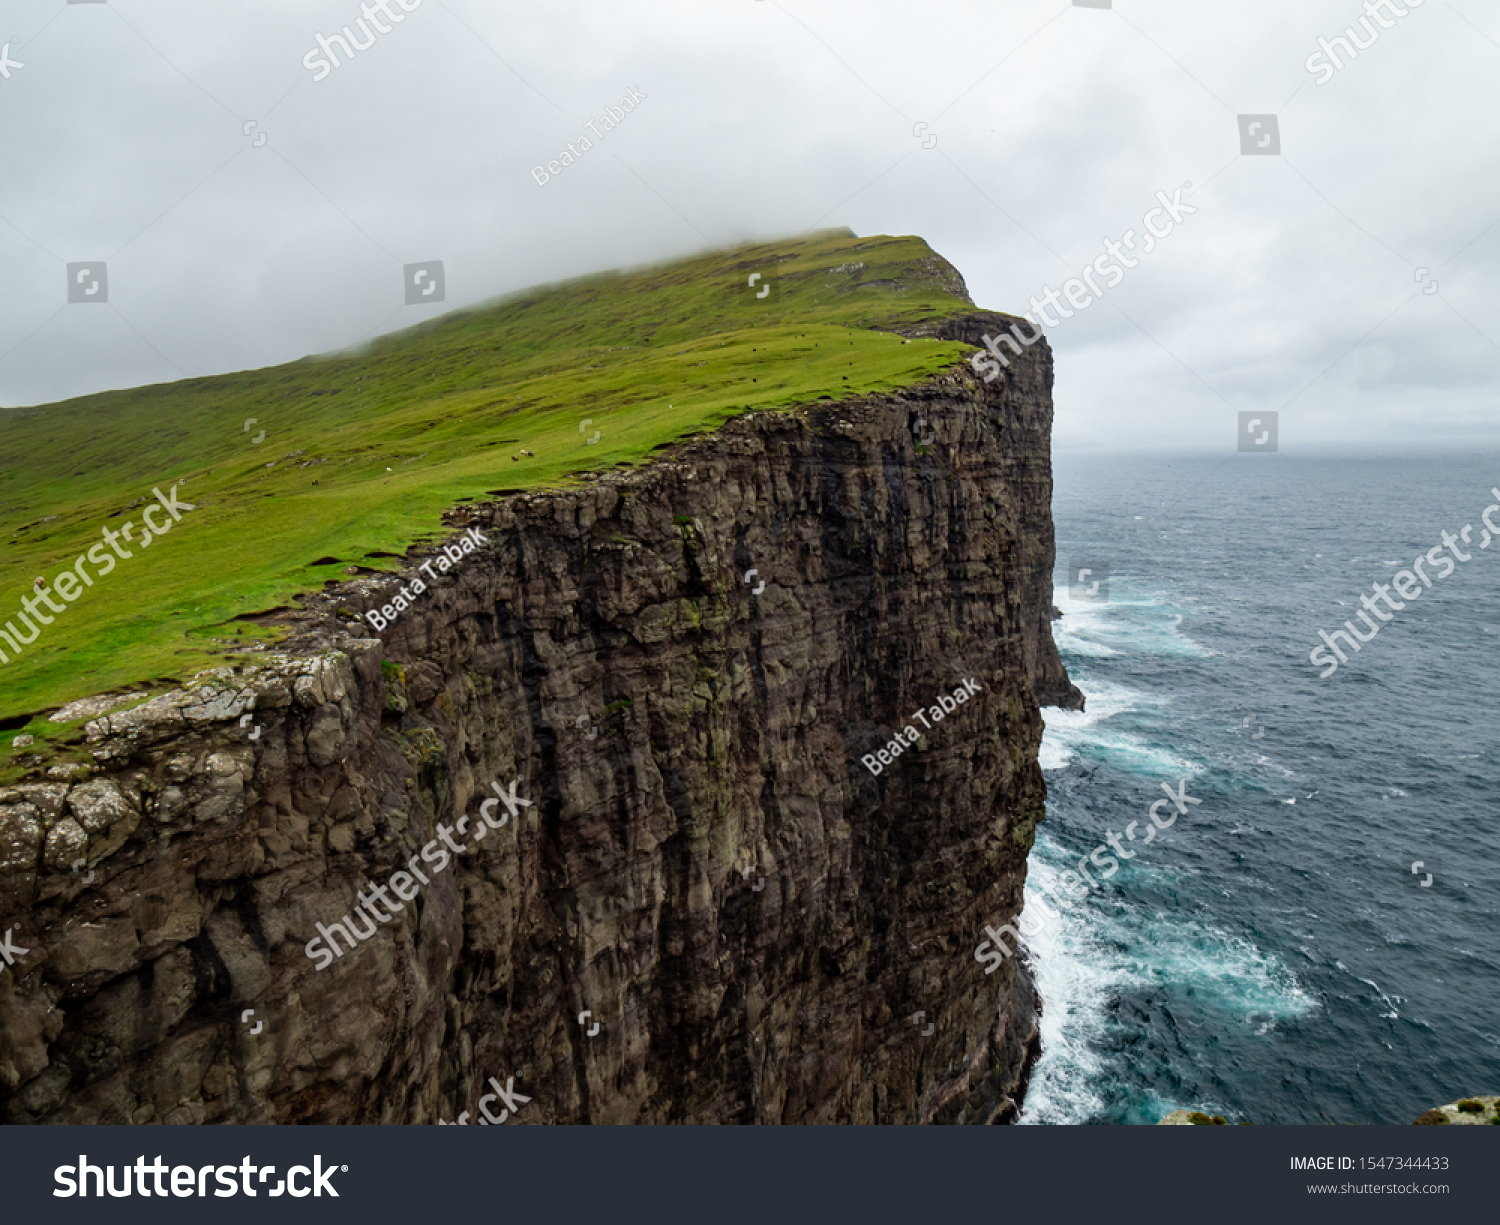 Steep cliffs of Faroe Islands. Green grass at the top, Ocean below the cliffs.  #1547344433